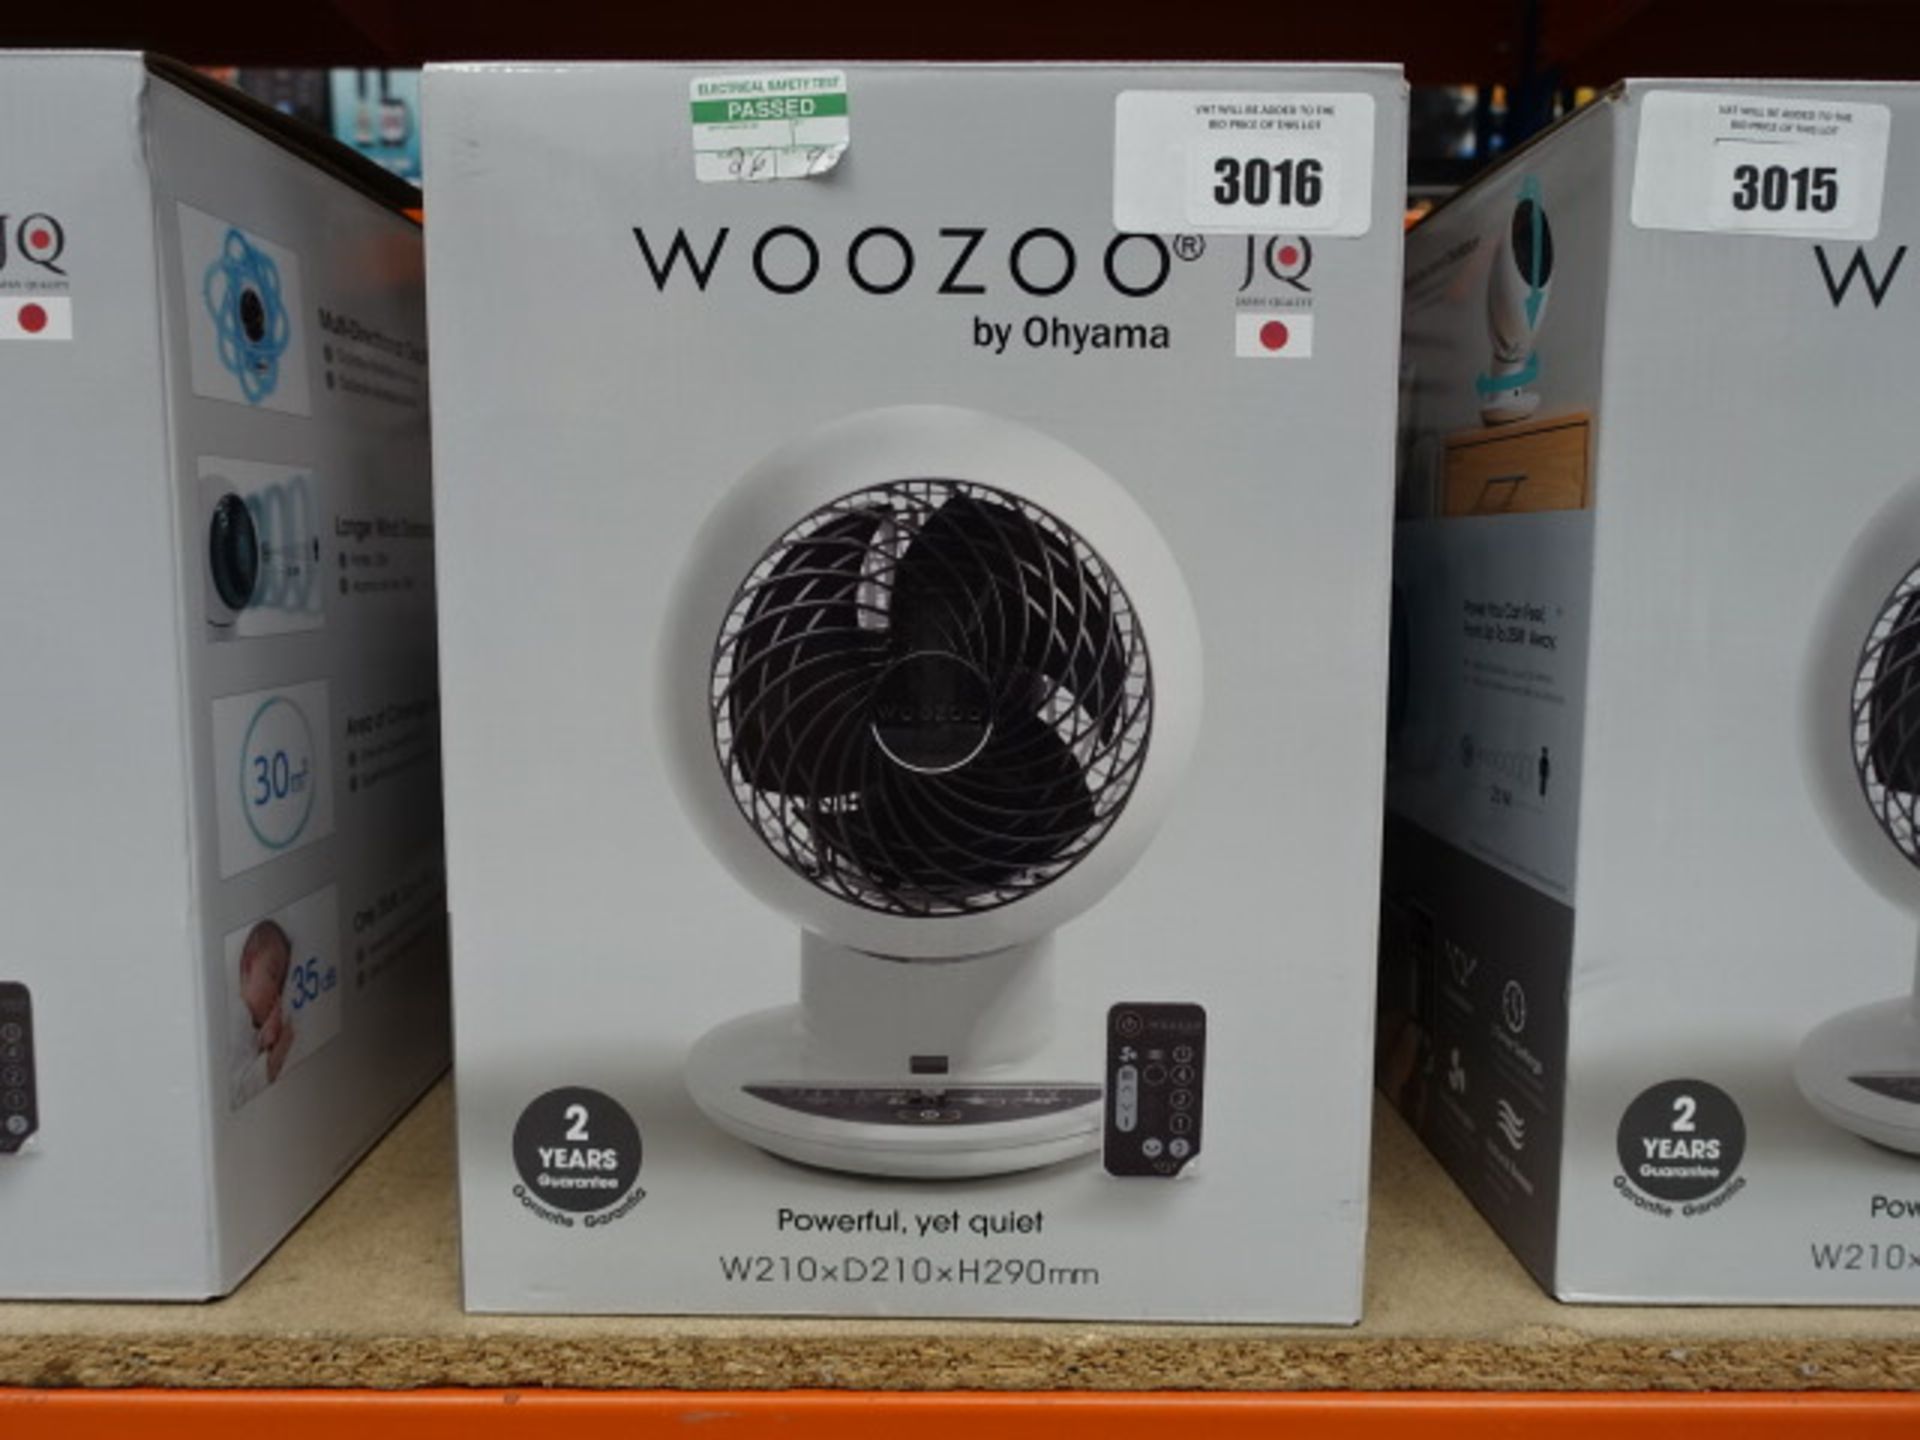 Boxed Woozoo desktop fan